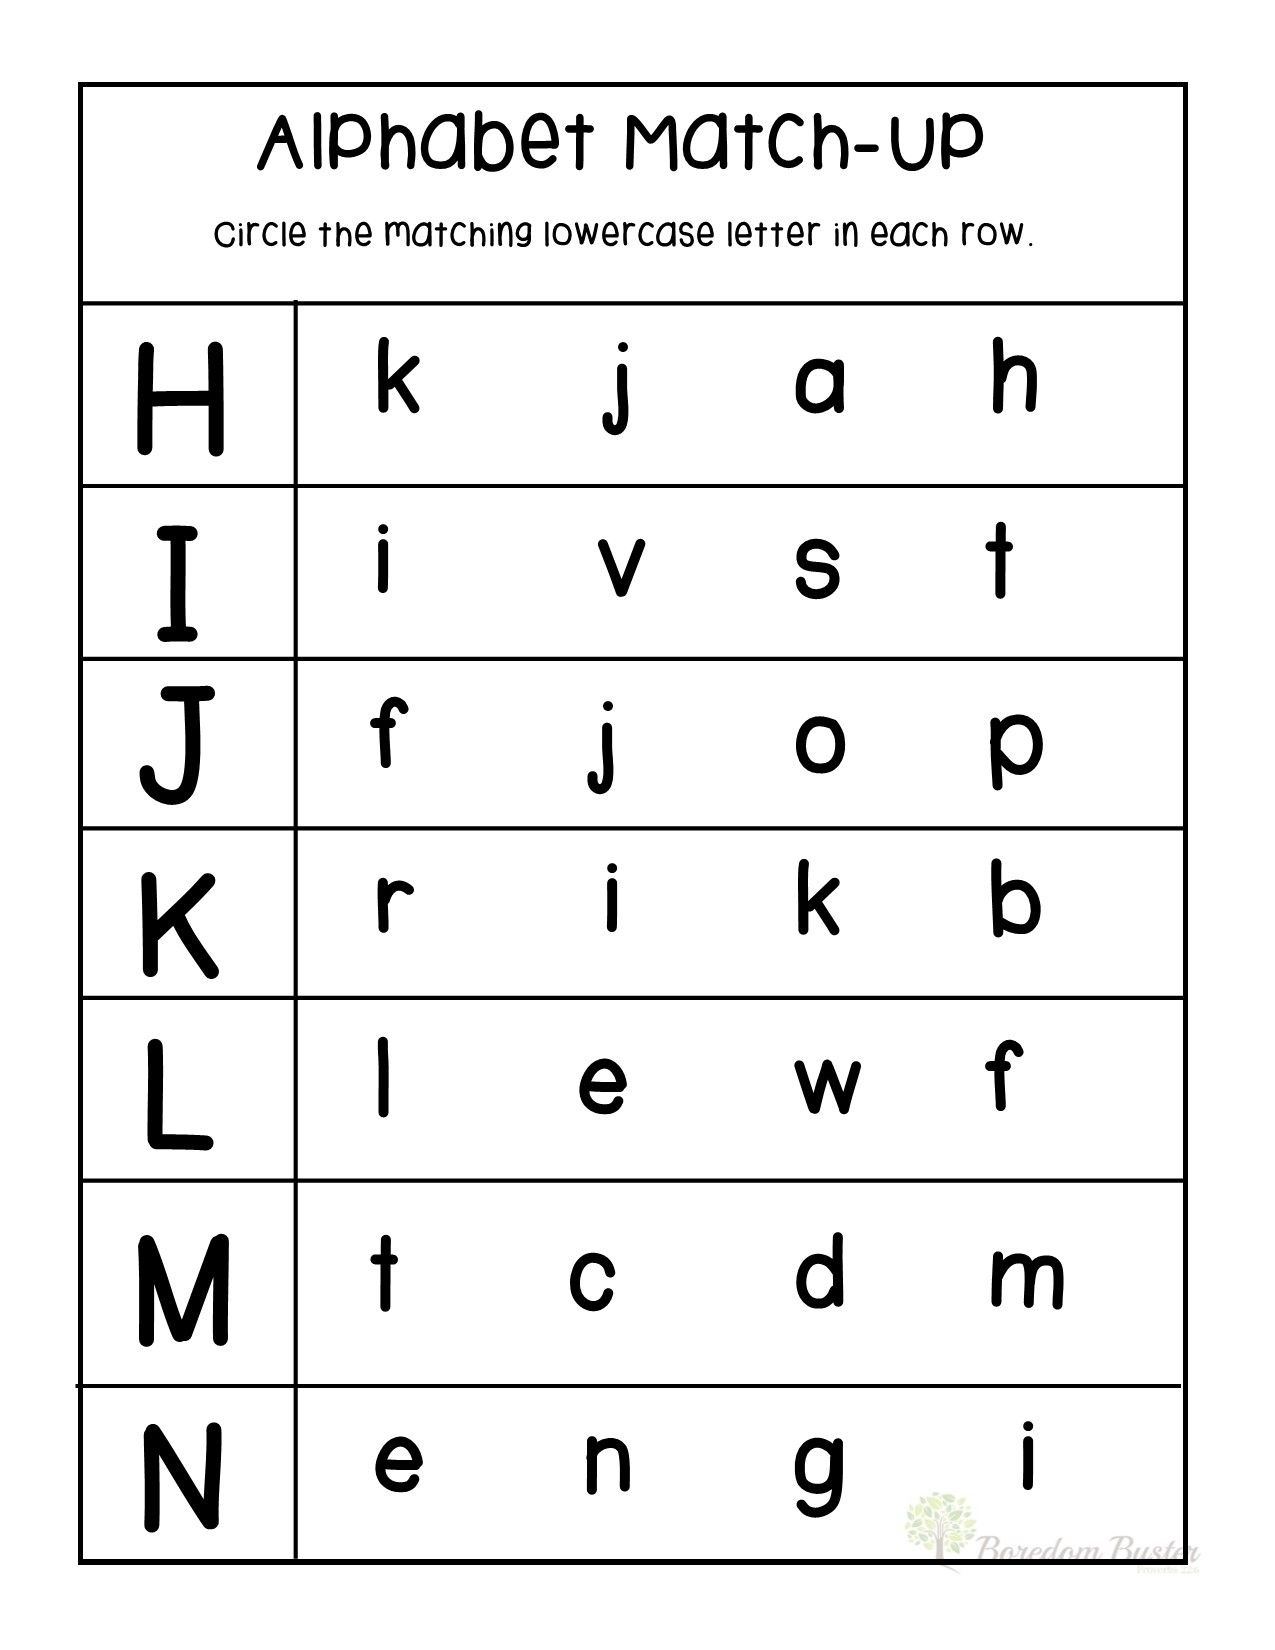 kindergarten-worksheets-match-upper-case-and-lower-case-letters-1-lower-case-letters